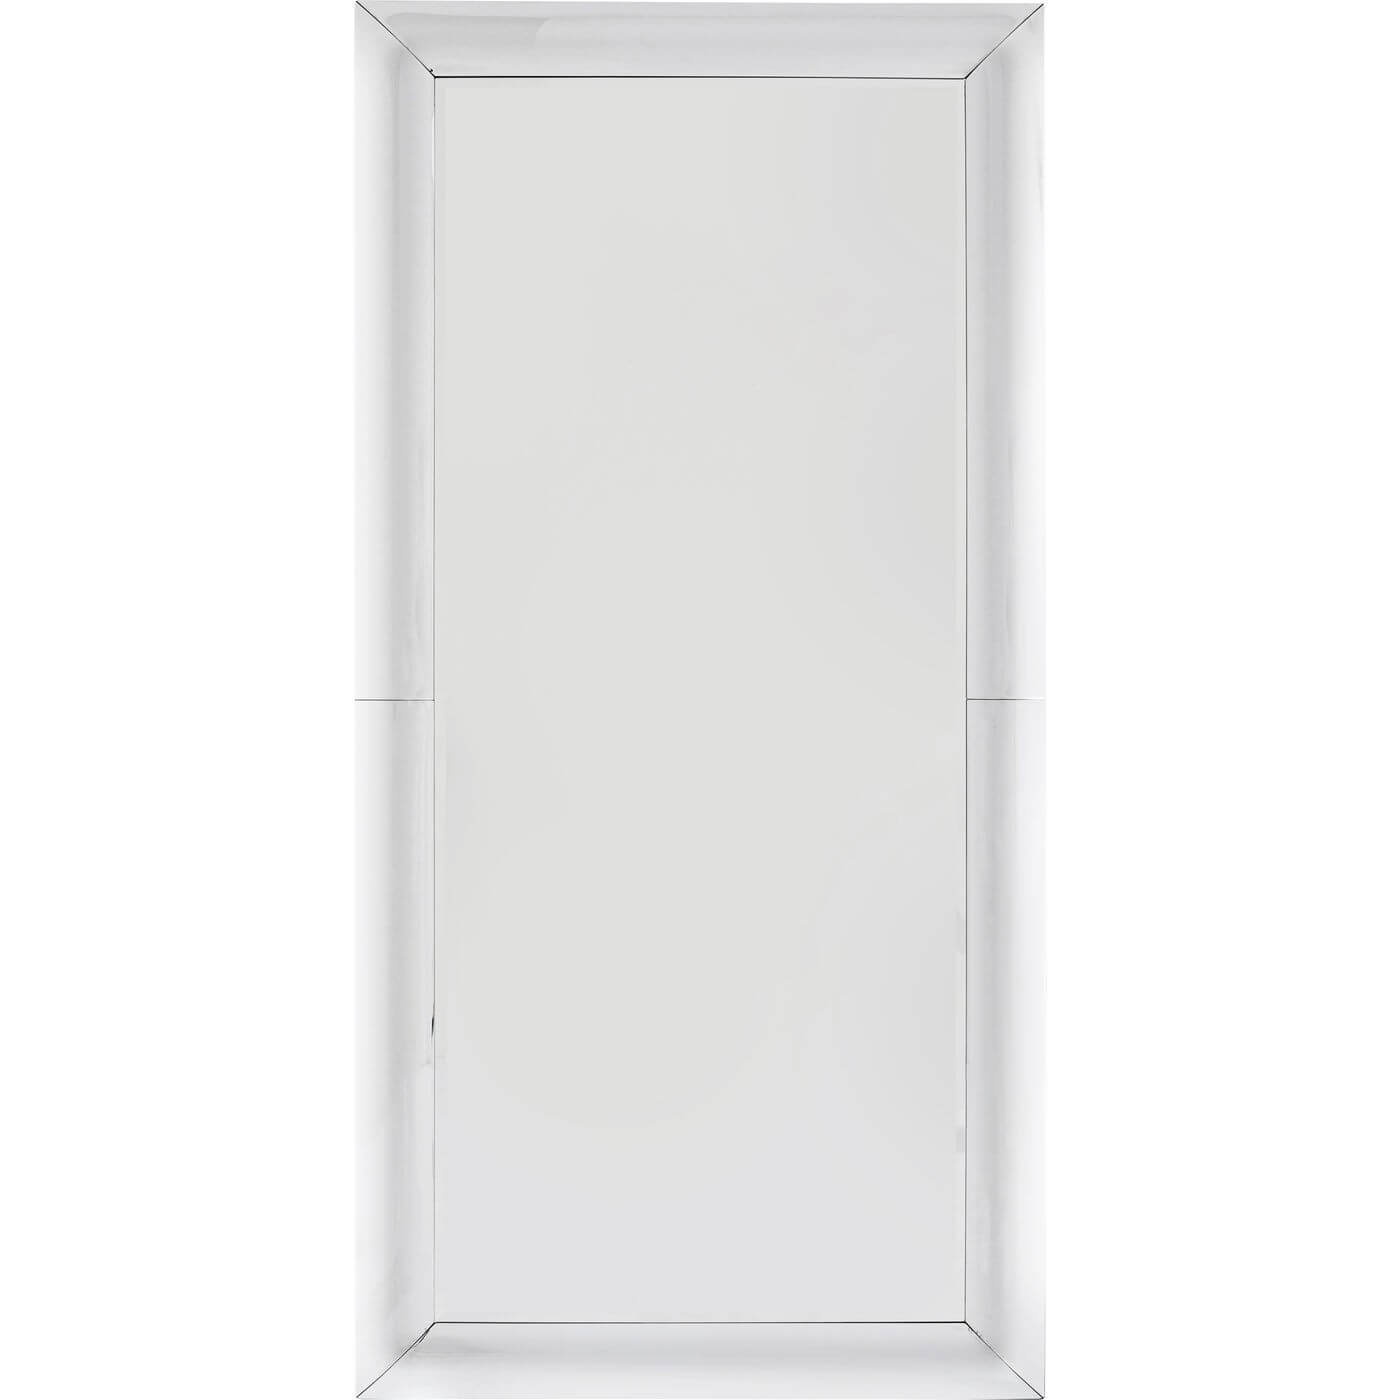 KARE DESIGN Bounce vægspejl - glas/sølv spejlglas/MDF, rektangulær (207x99)